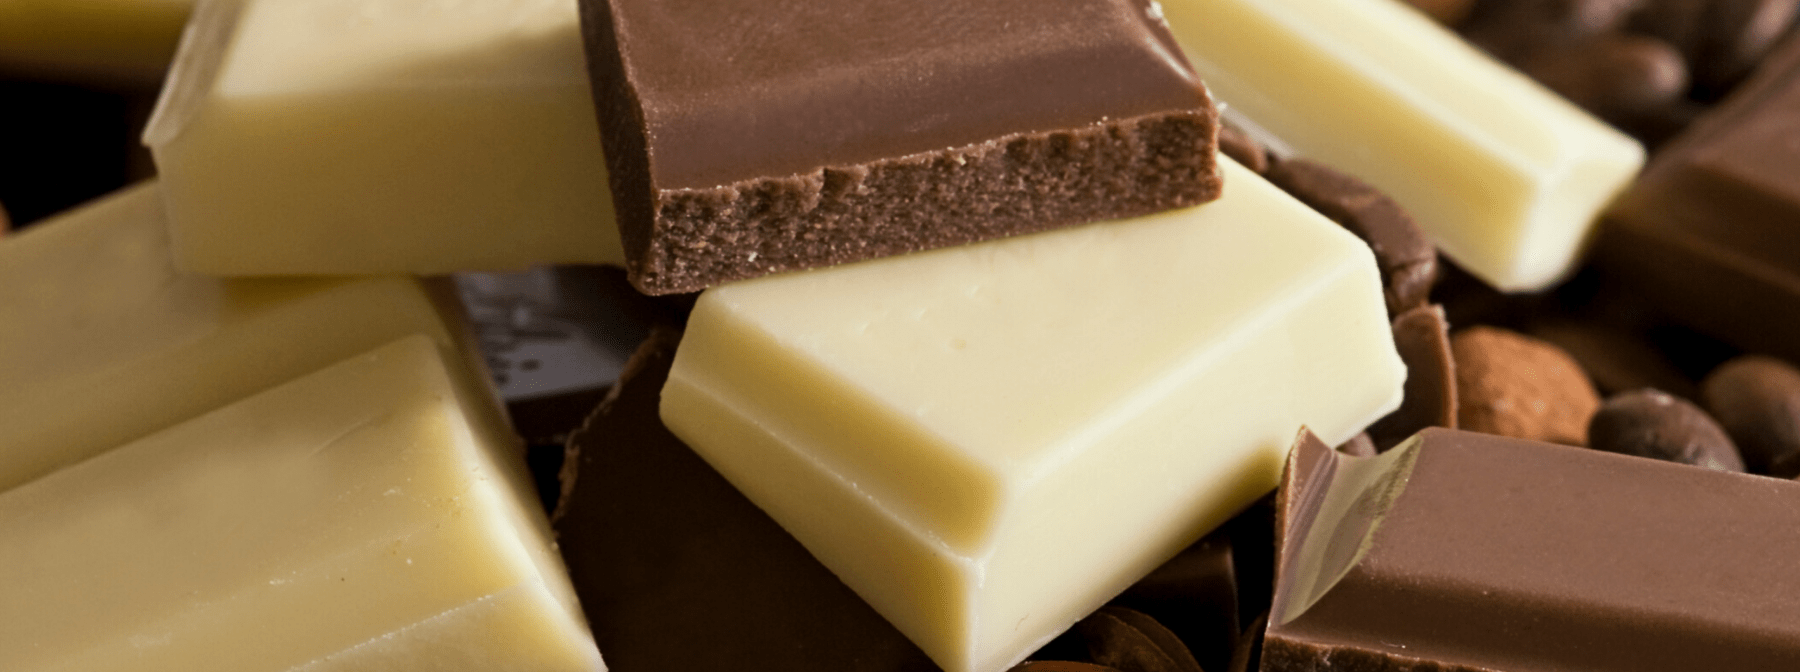 5 Deliciosas Recetas con Chocolate